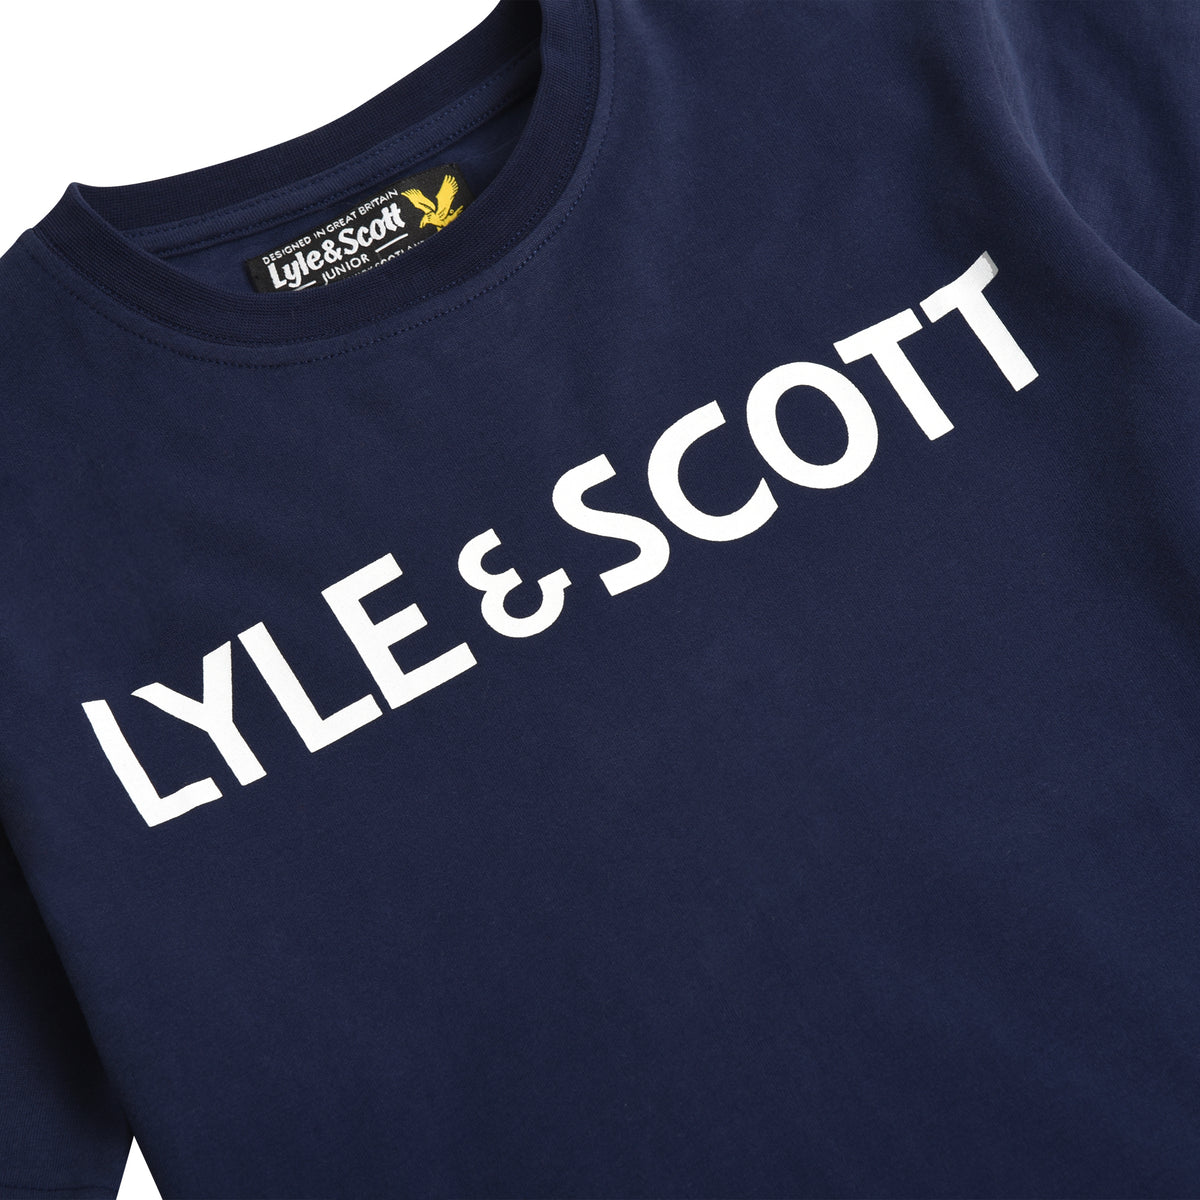 Lyle & Scott 'Text Tee' Long Sleeved T-Shirt, 03, Lsc0951, Navy Blazer